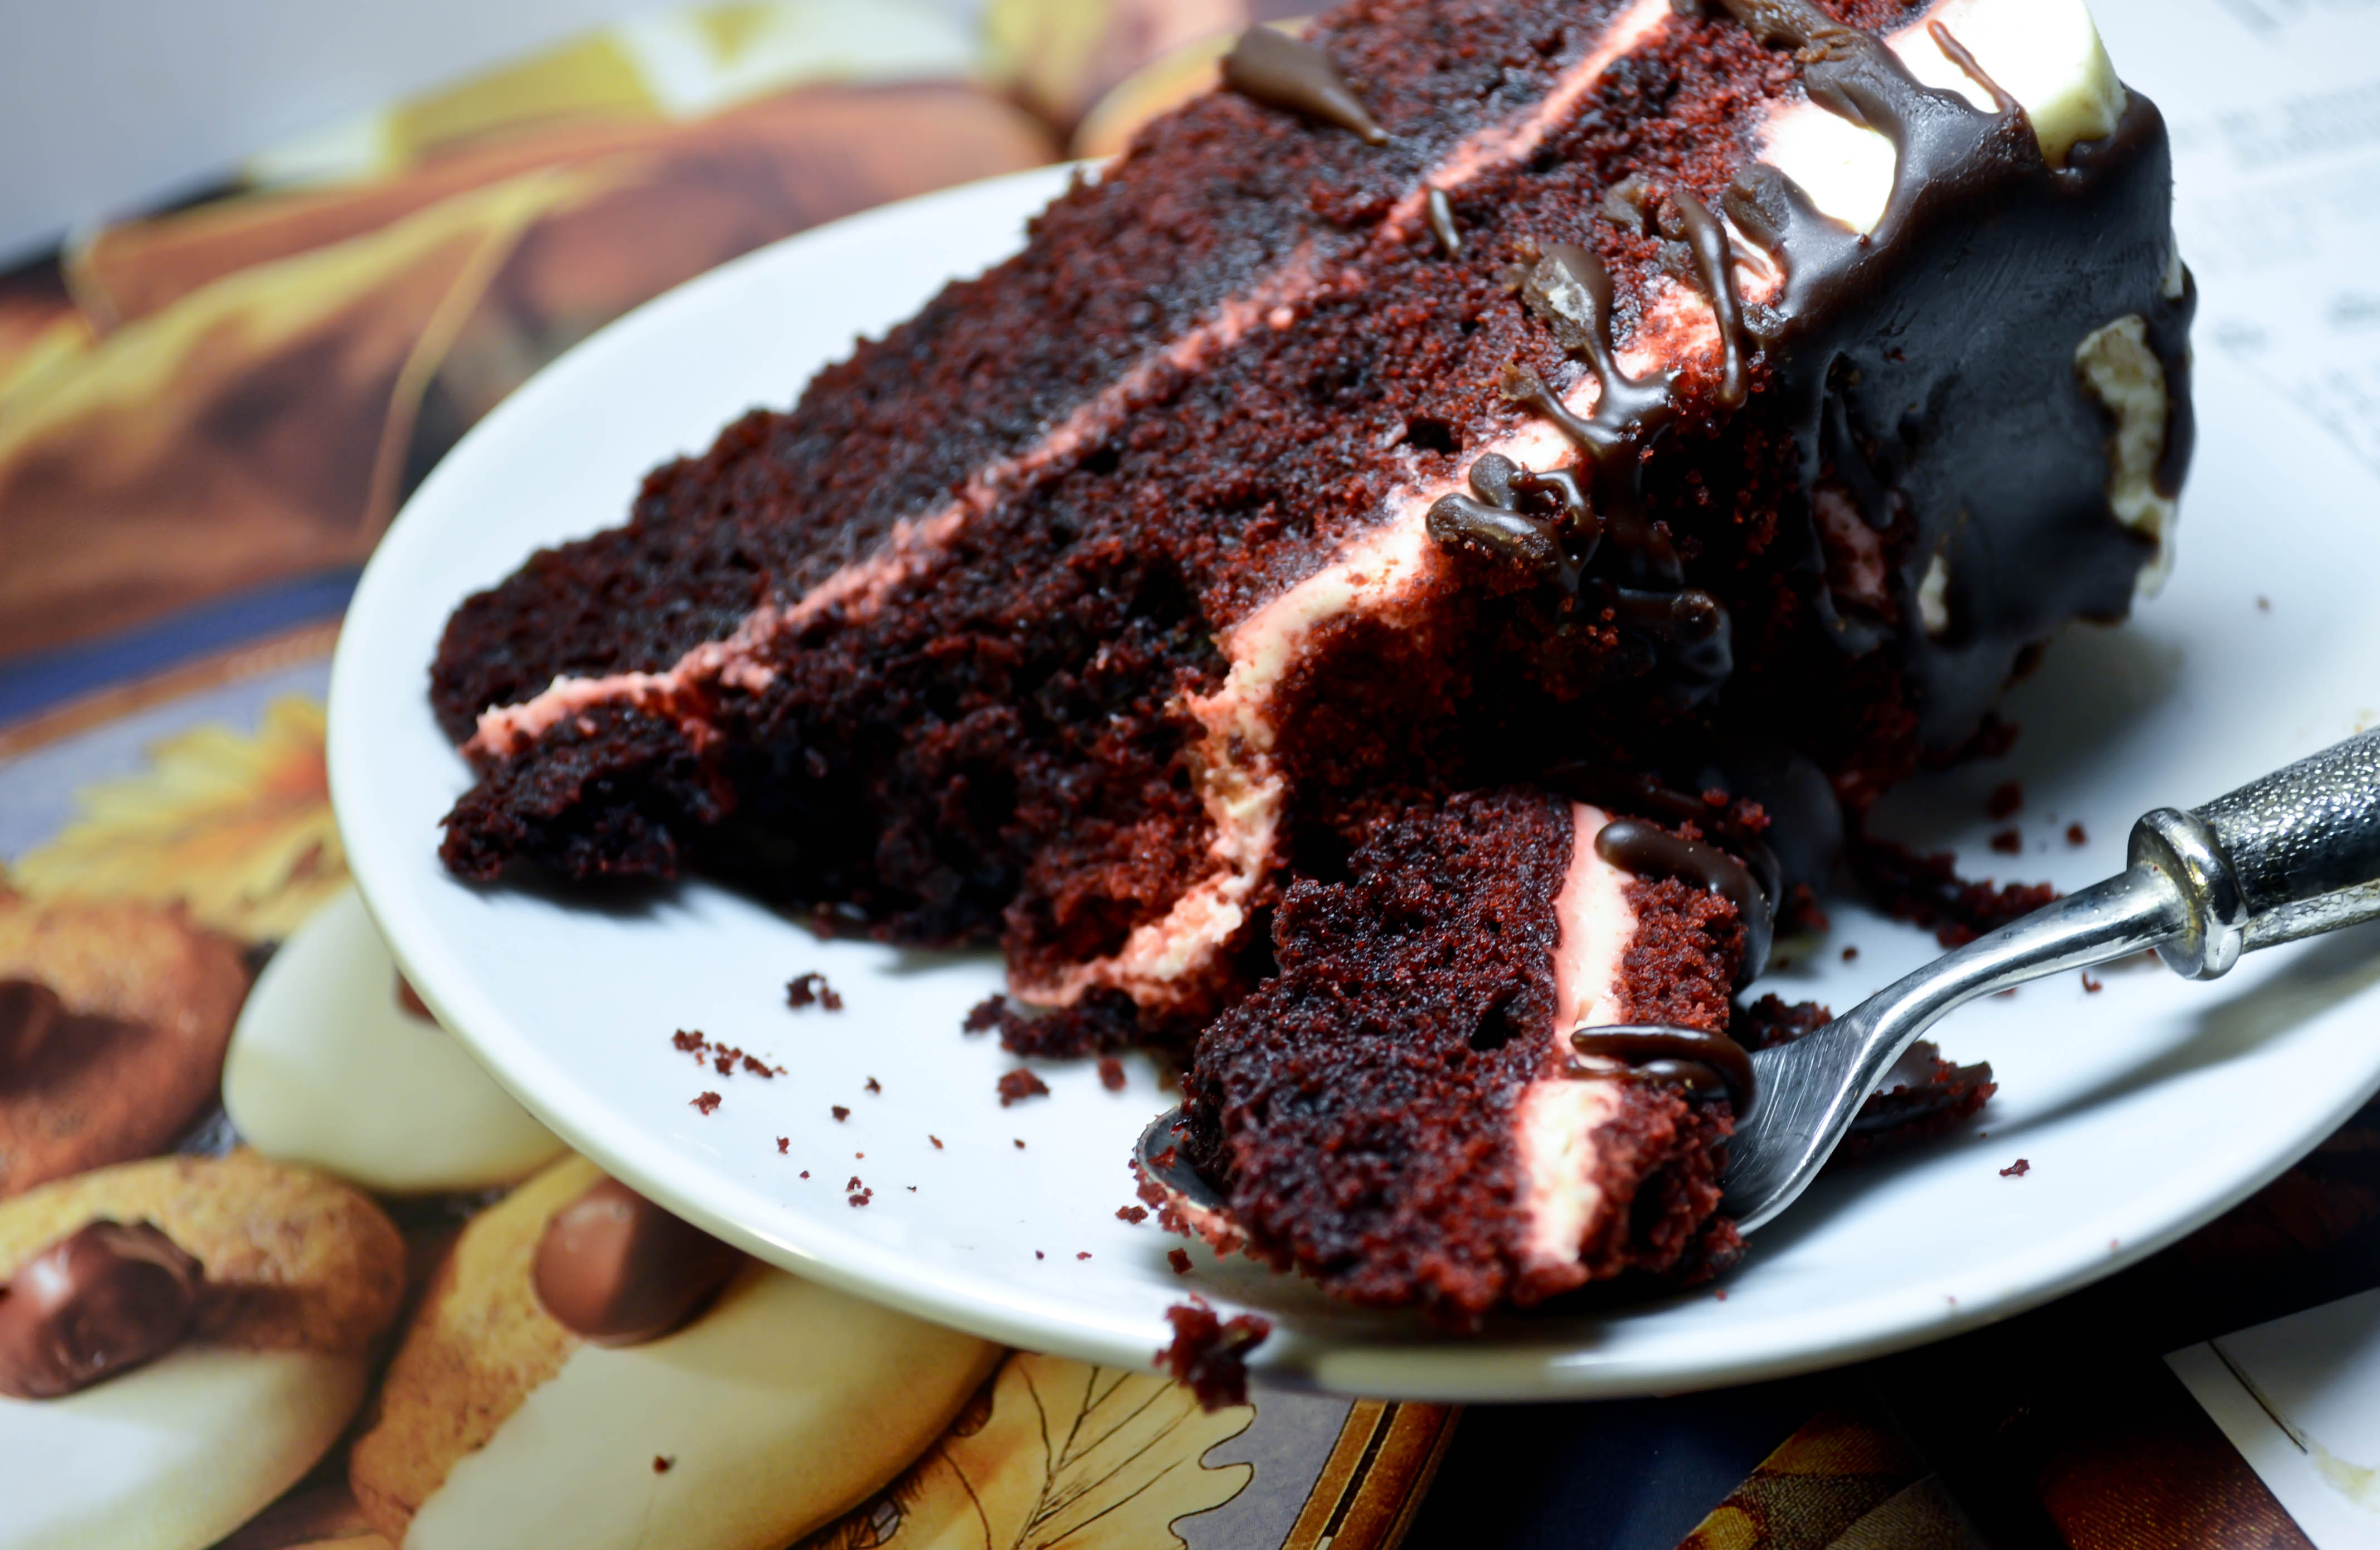 https://www.santabarbarachocolate.com/product_images/uploaded_images/red-velvet-cake-recipe.jpg